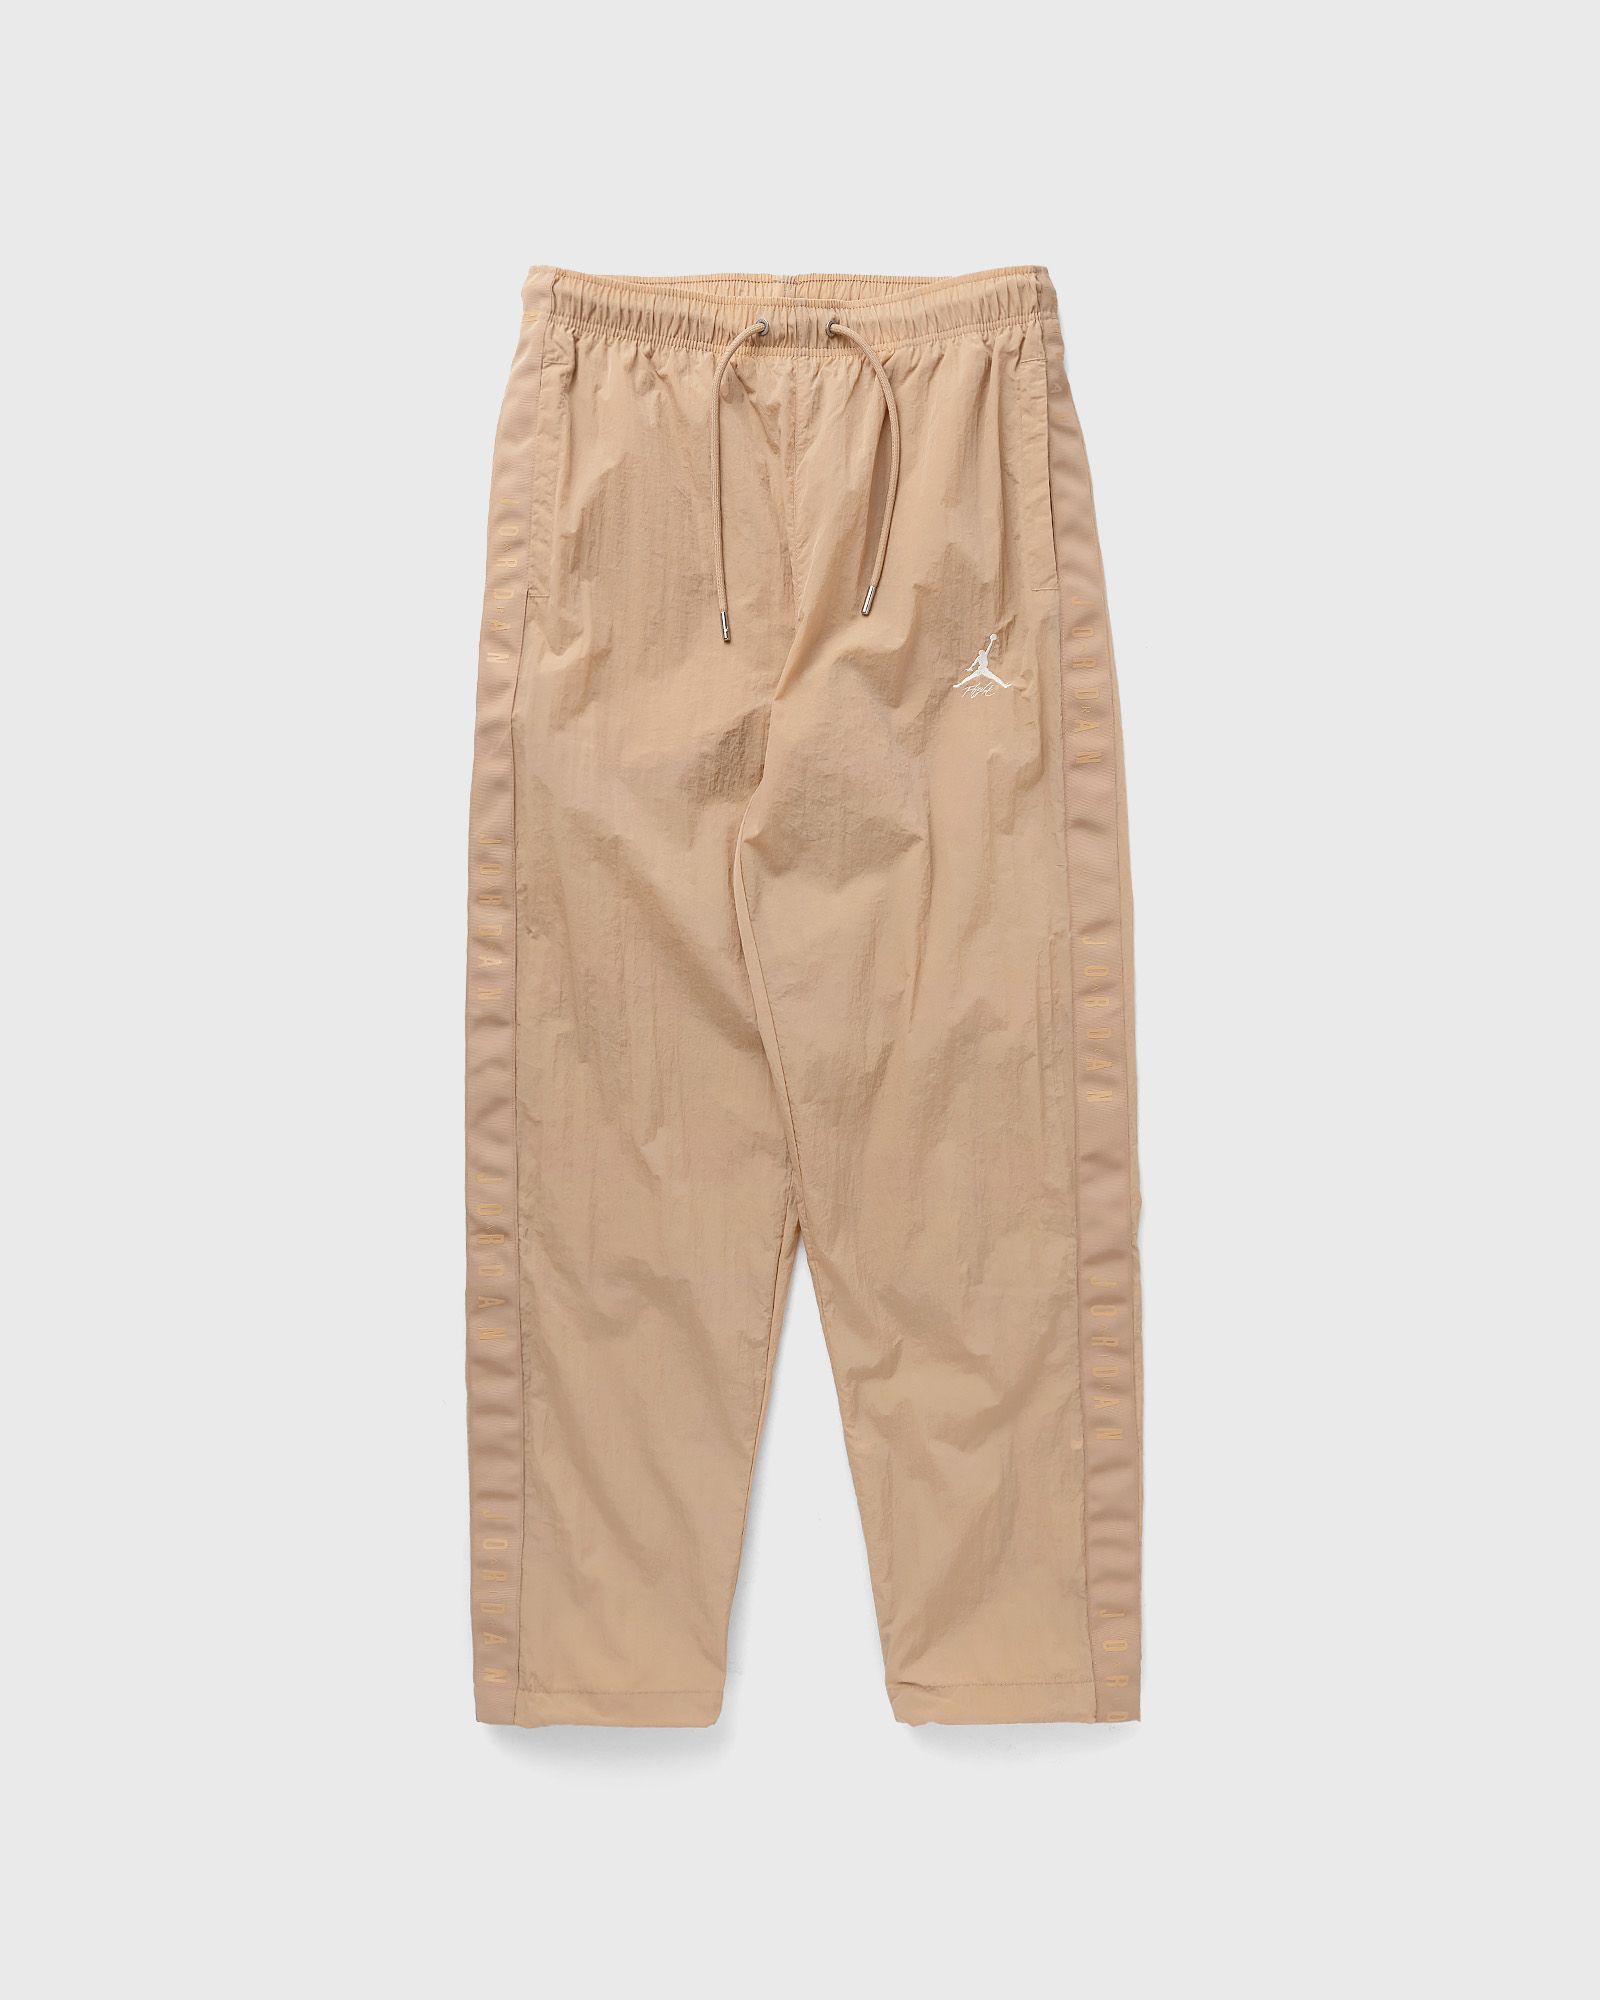 Jordan - essentials warmup pants men track pants brown in größe:xl